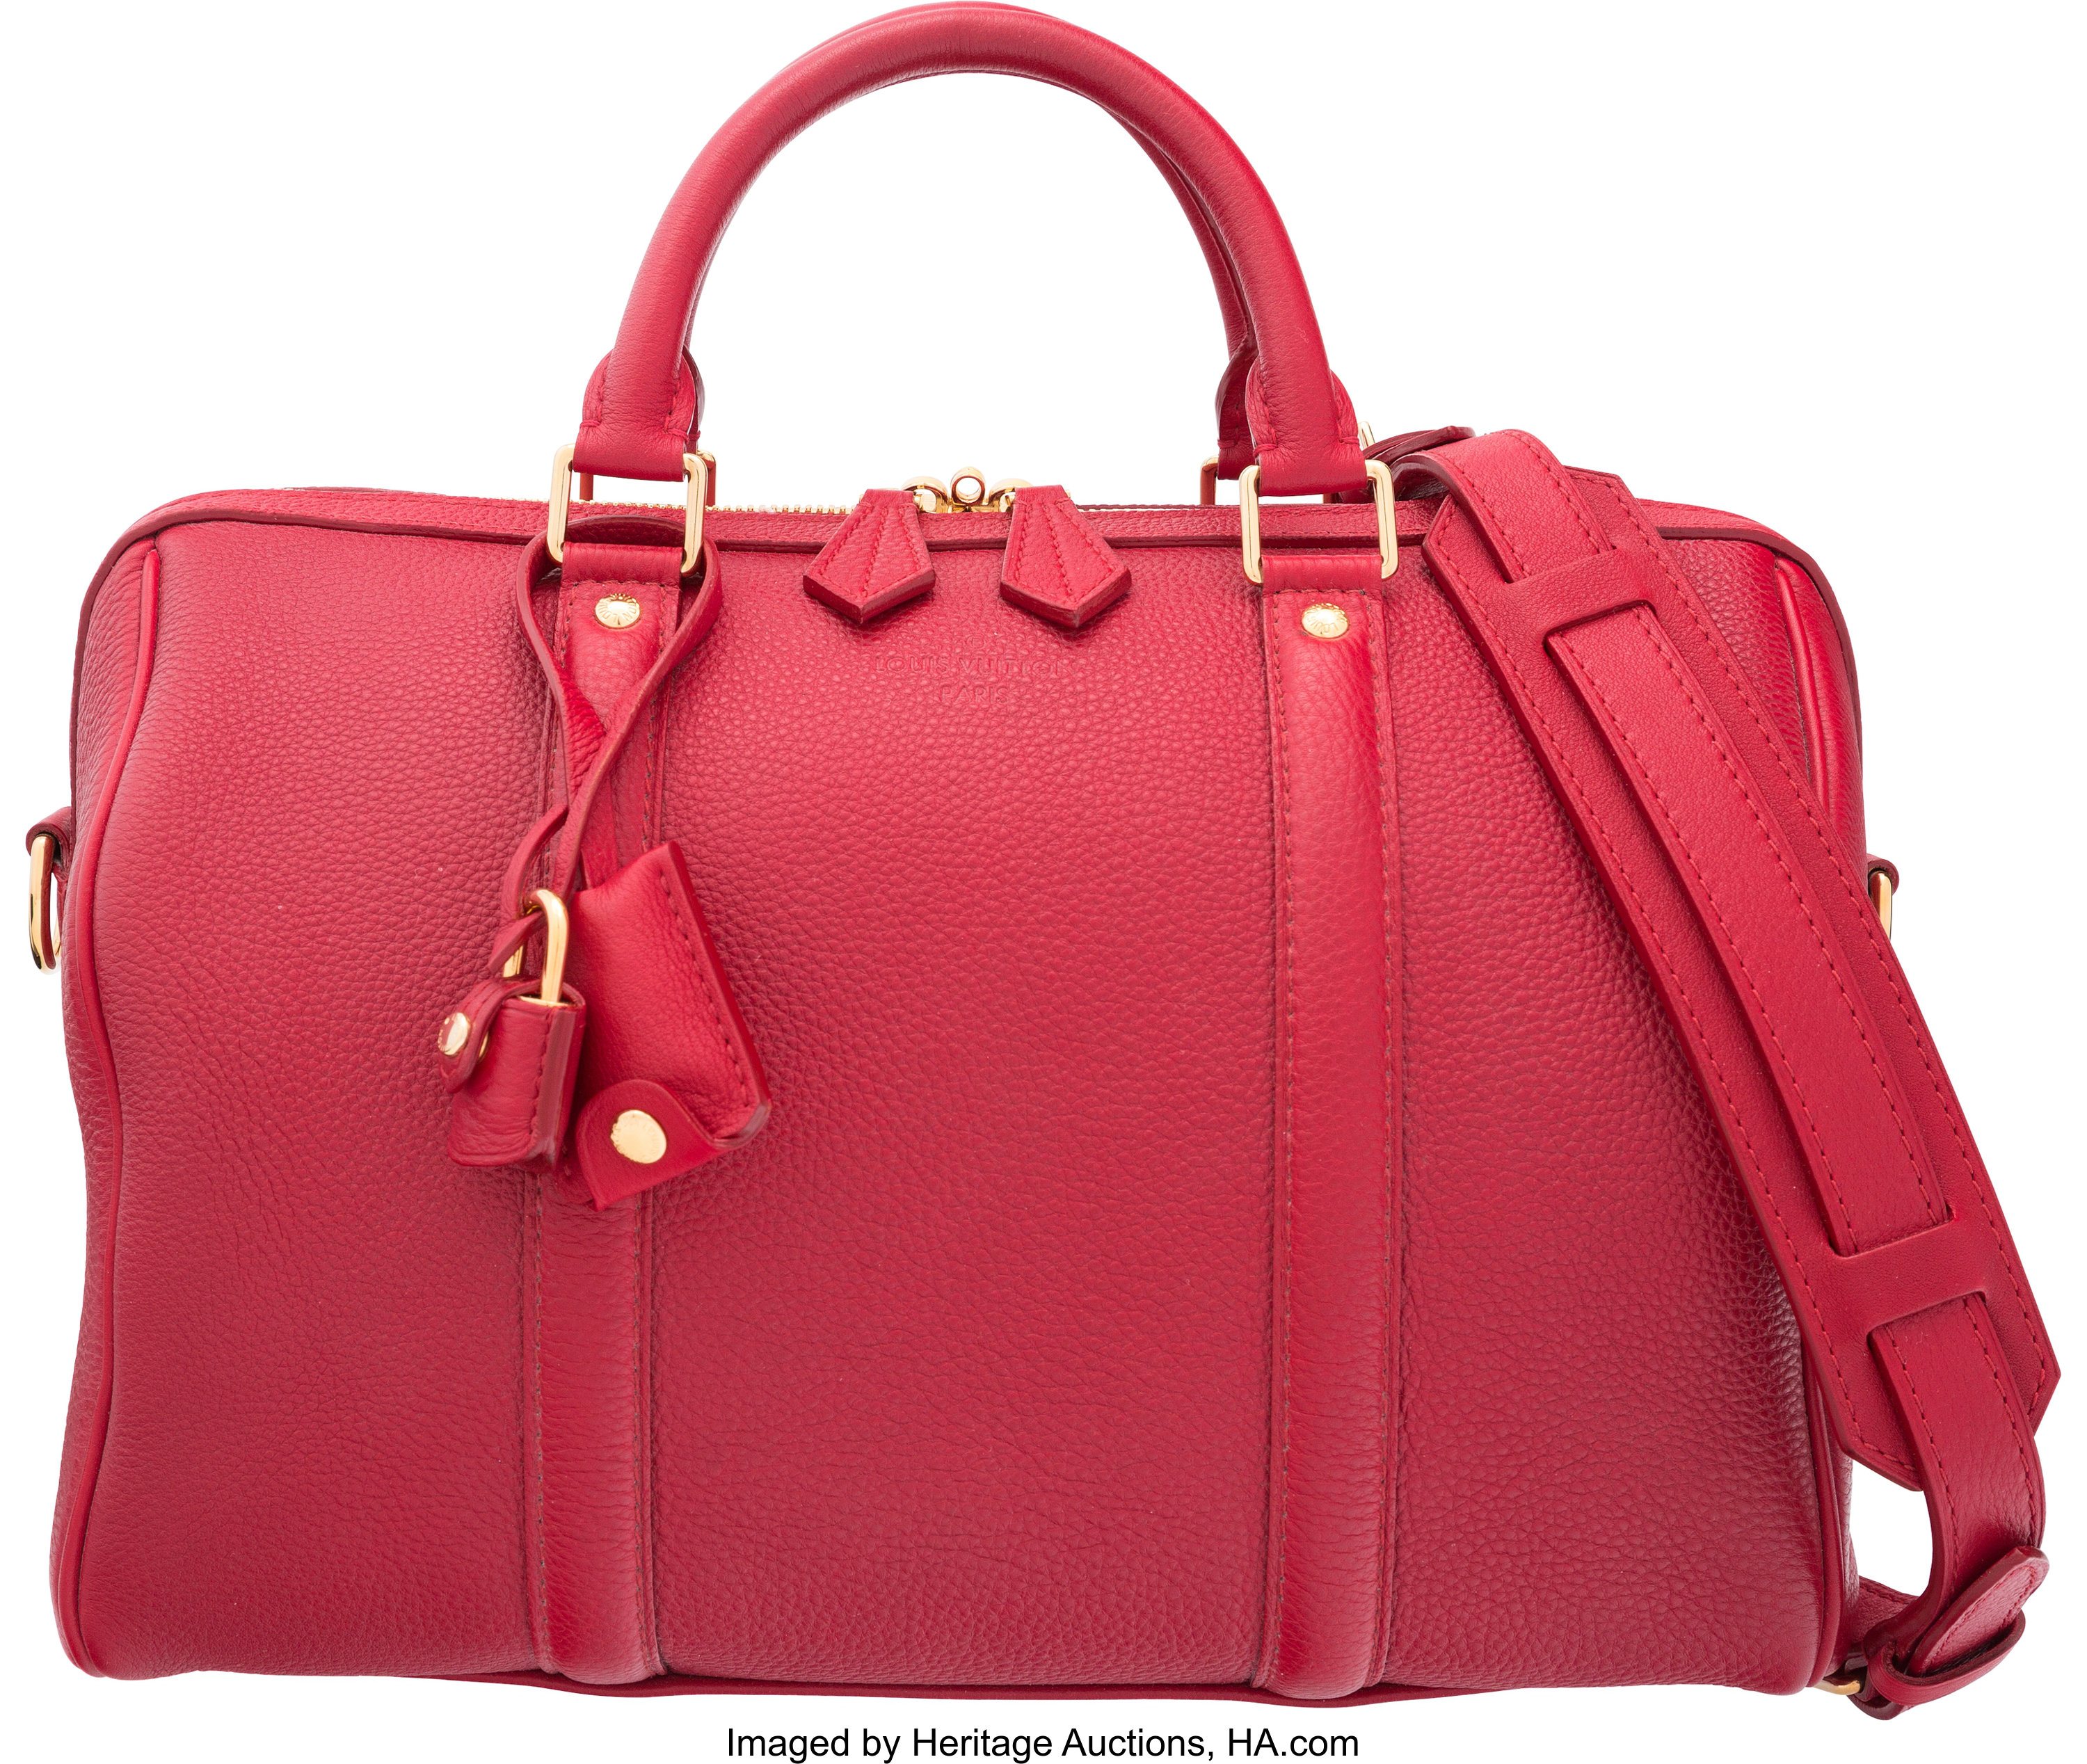 Louis Vuitton Cherry Red Leather Sofia Coppola Speedy 30 Bag., Lot #58044